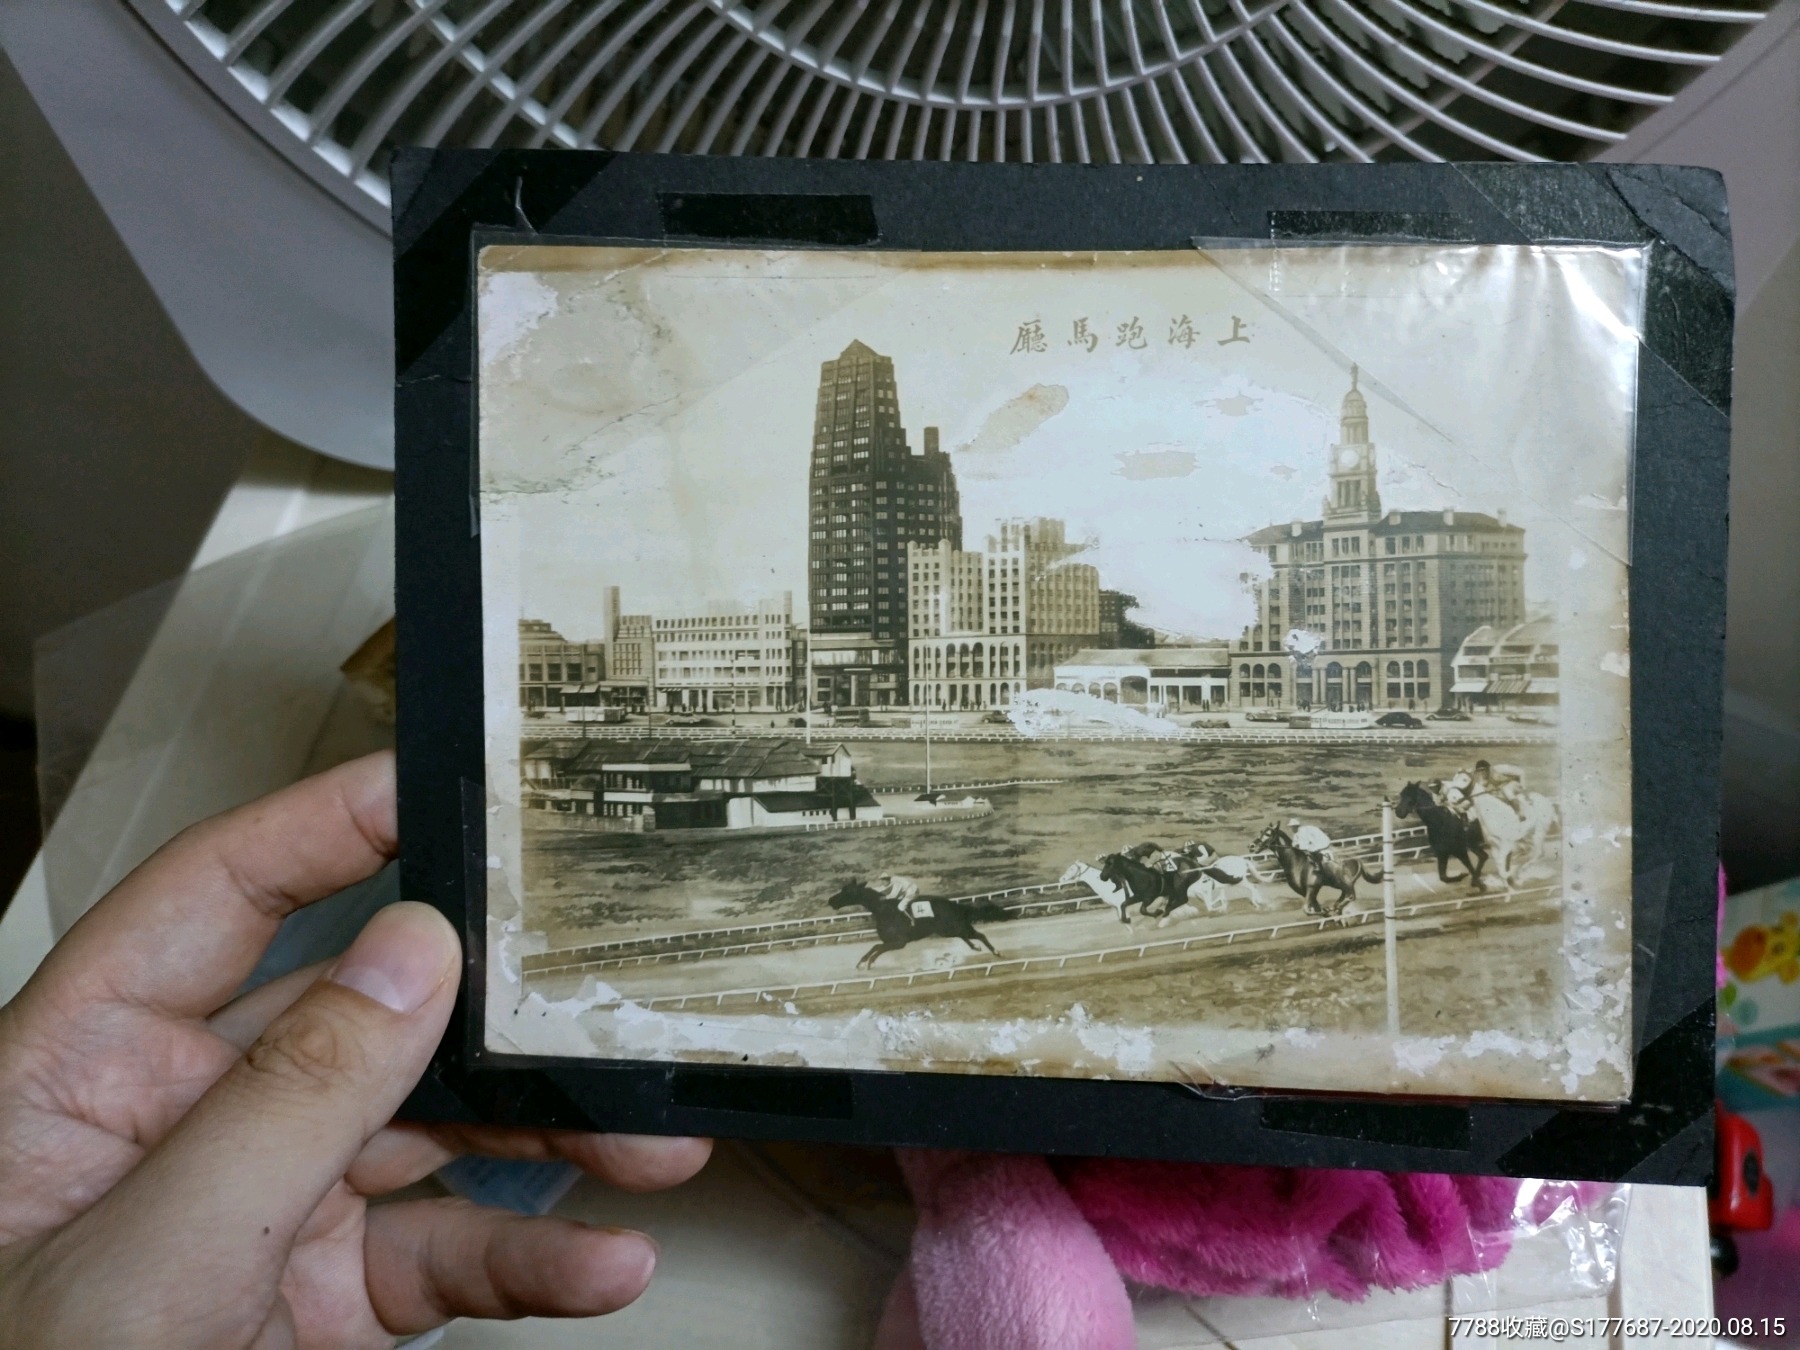 民国时期老上海风景照片(跑马厅 一马路)二张大尺寸